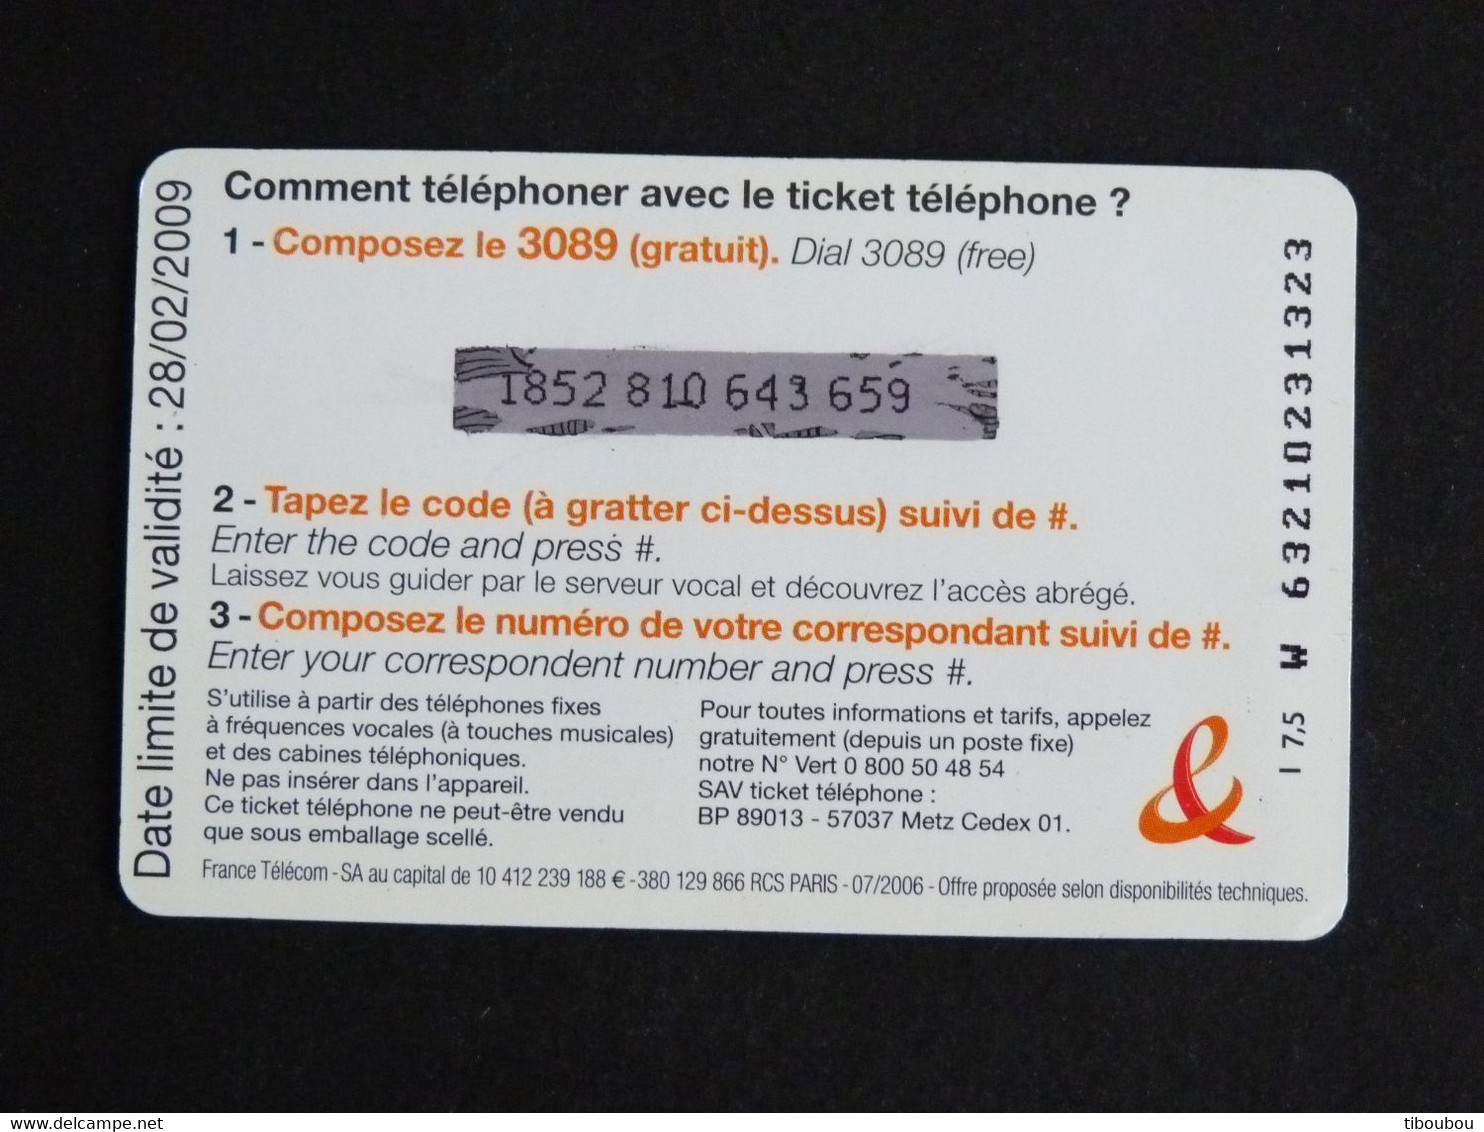 TELECARTE TICKET TELEPHONE INTERNATIONAL 7,5 EUROS FRANCE TELECOM - FT